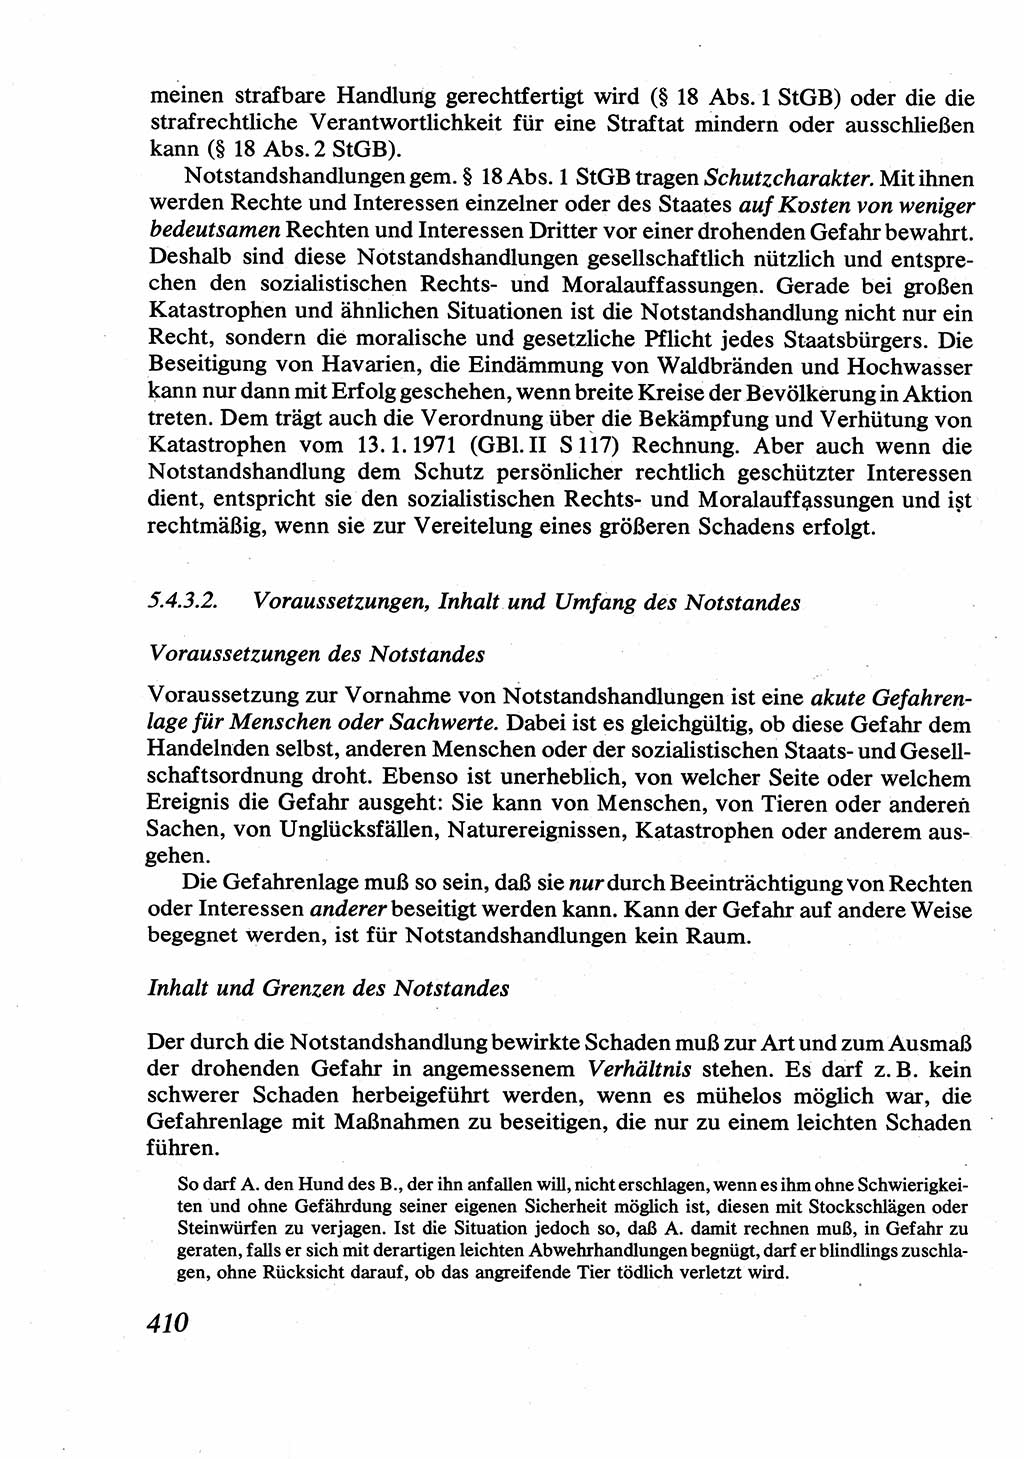 Strafrecht [Deutsche Demokratische Republik (DDR)], Allgemeiner Teil, Lehrbuch 1976, Seite 410 (Strafr. DDR AT Lb. 1976, S. 410)